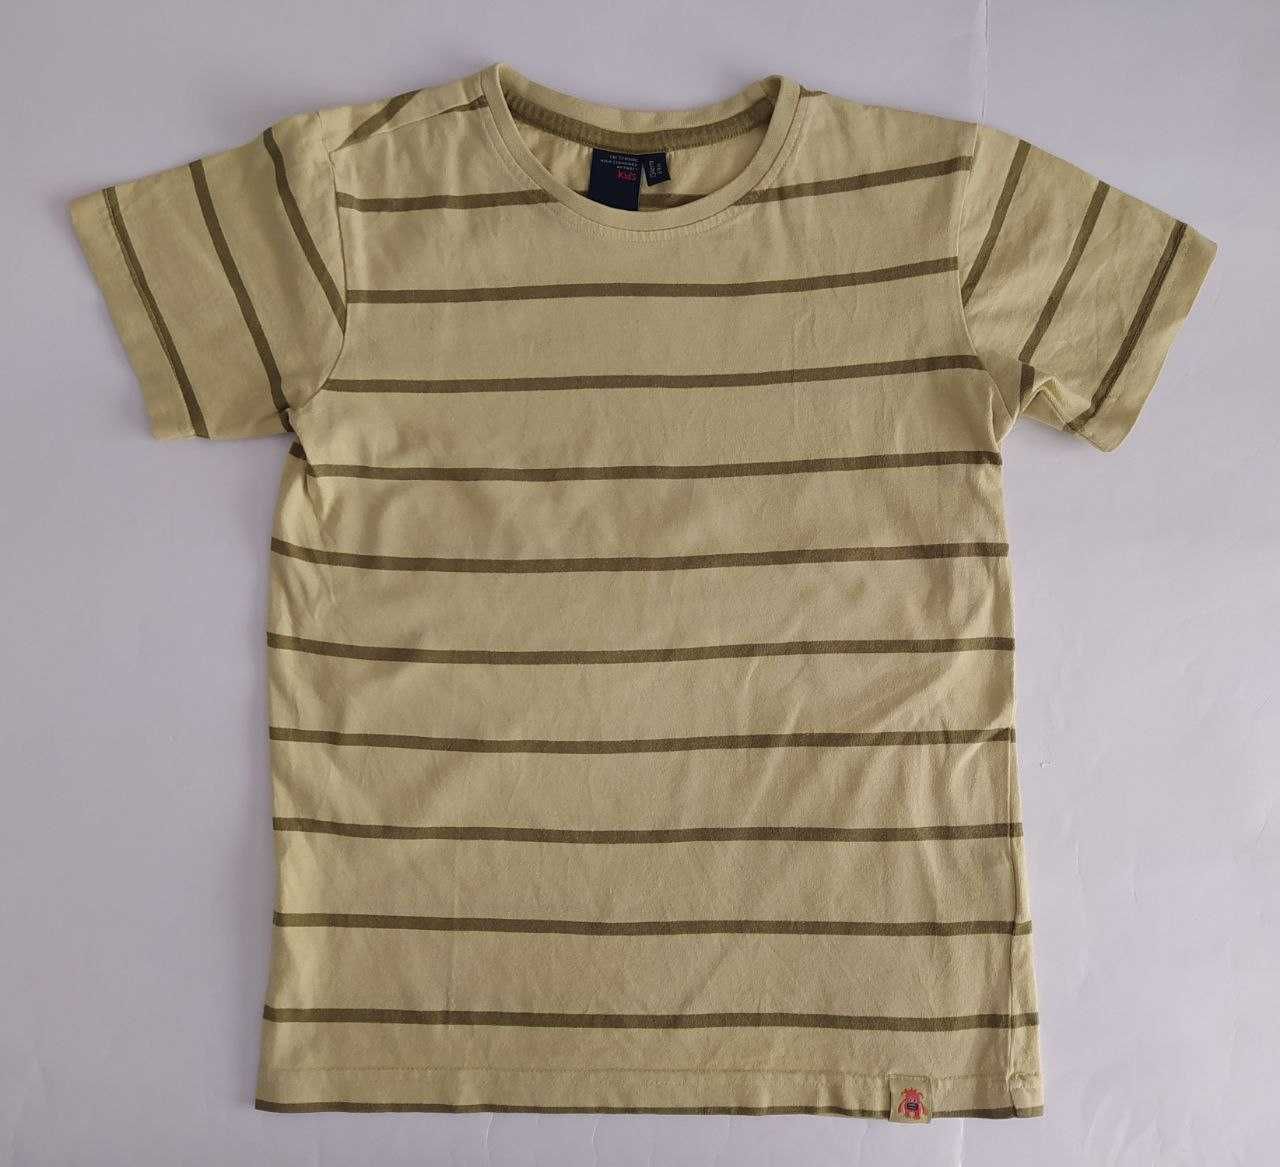 Koszulka chłopięca z krótkim rękawem, t-shirt, bluzka dla chłopca 134